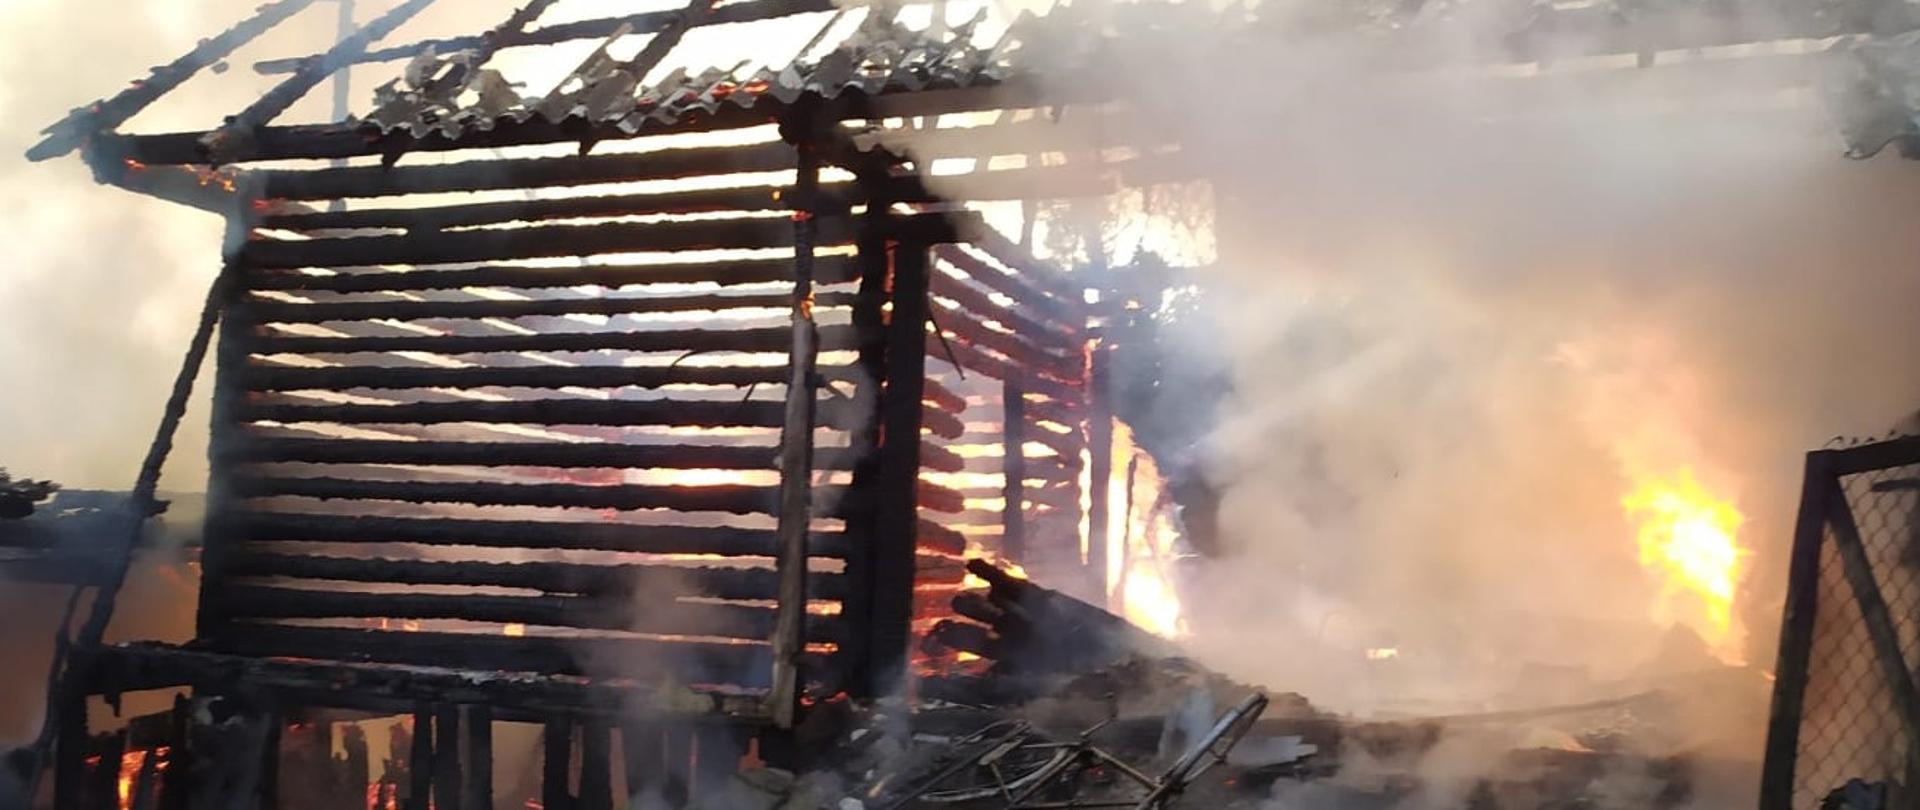 Zdjęcie przedstawia konstrukcję drewniana budynku gospodarczego, która objęta jest częściowo płomieniami. Pokrycie dachu z płyt eternitu zostało zniszczone całkowicie. 